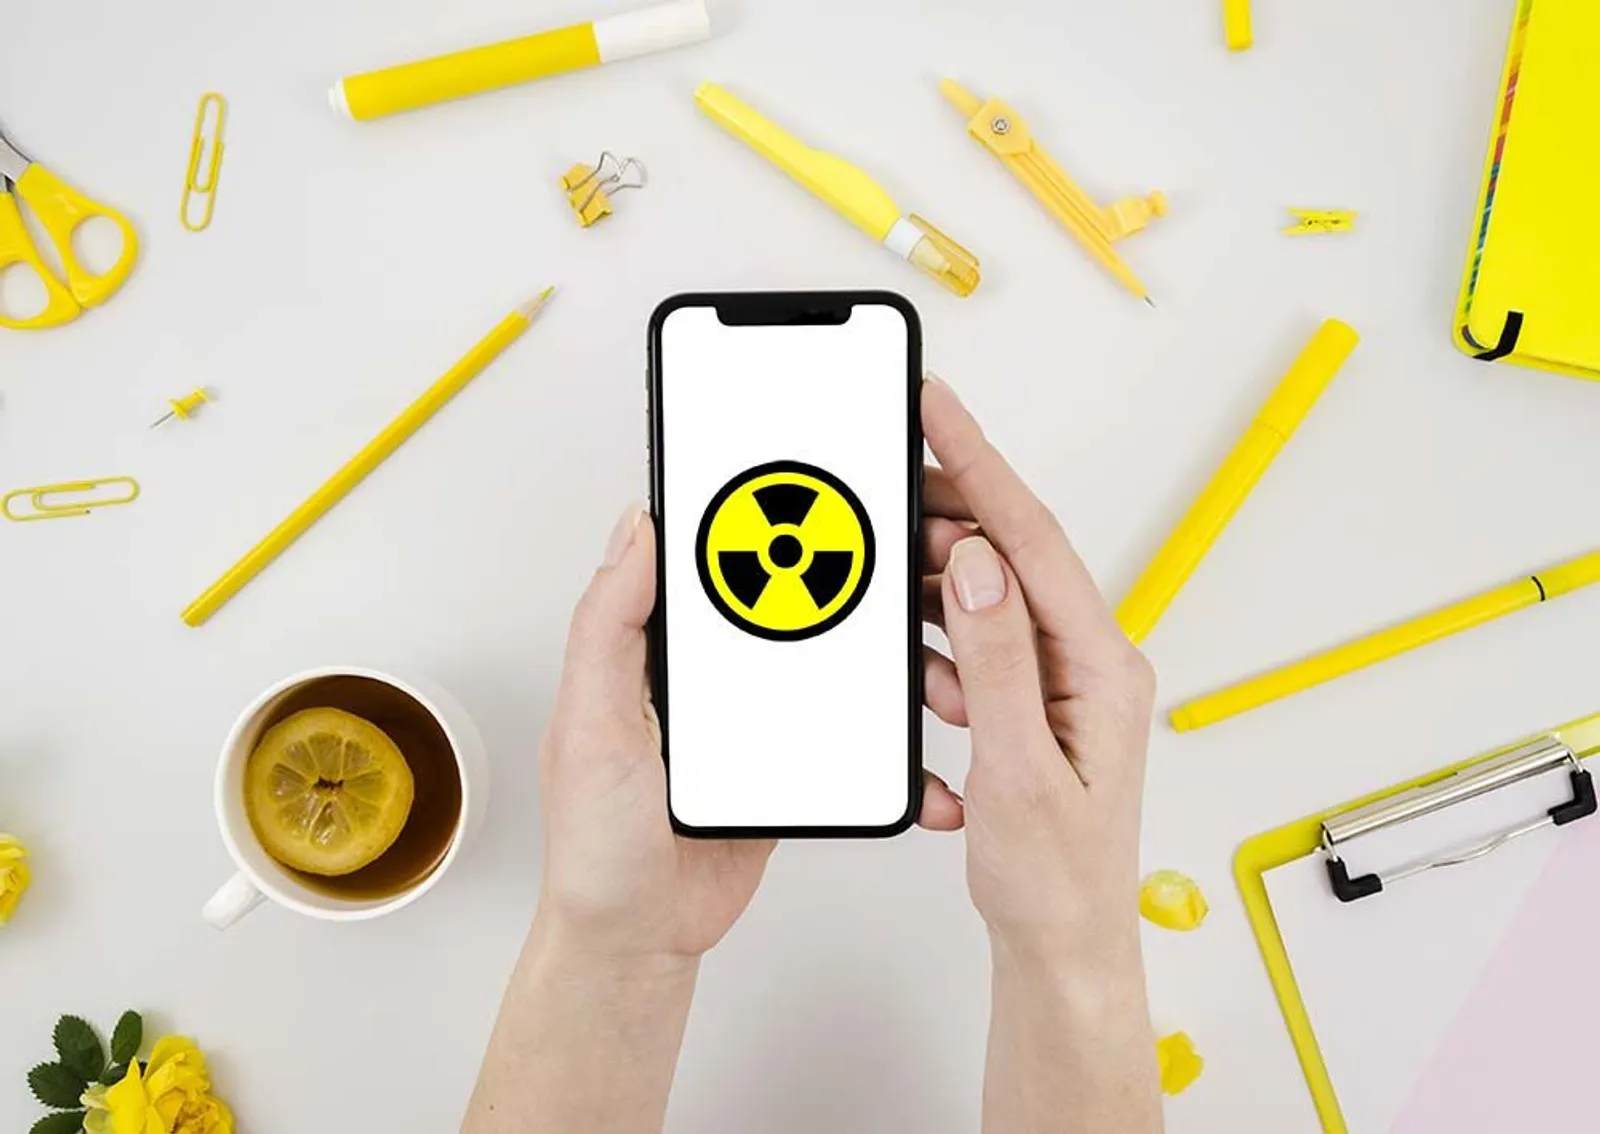 Daftar 6 Smartphone dengan Tingkat Radiasi Tertinggi tahun 2019